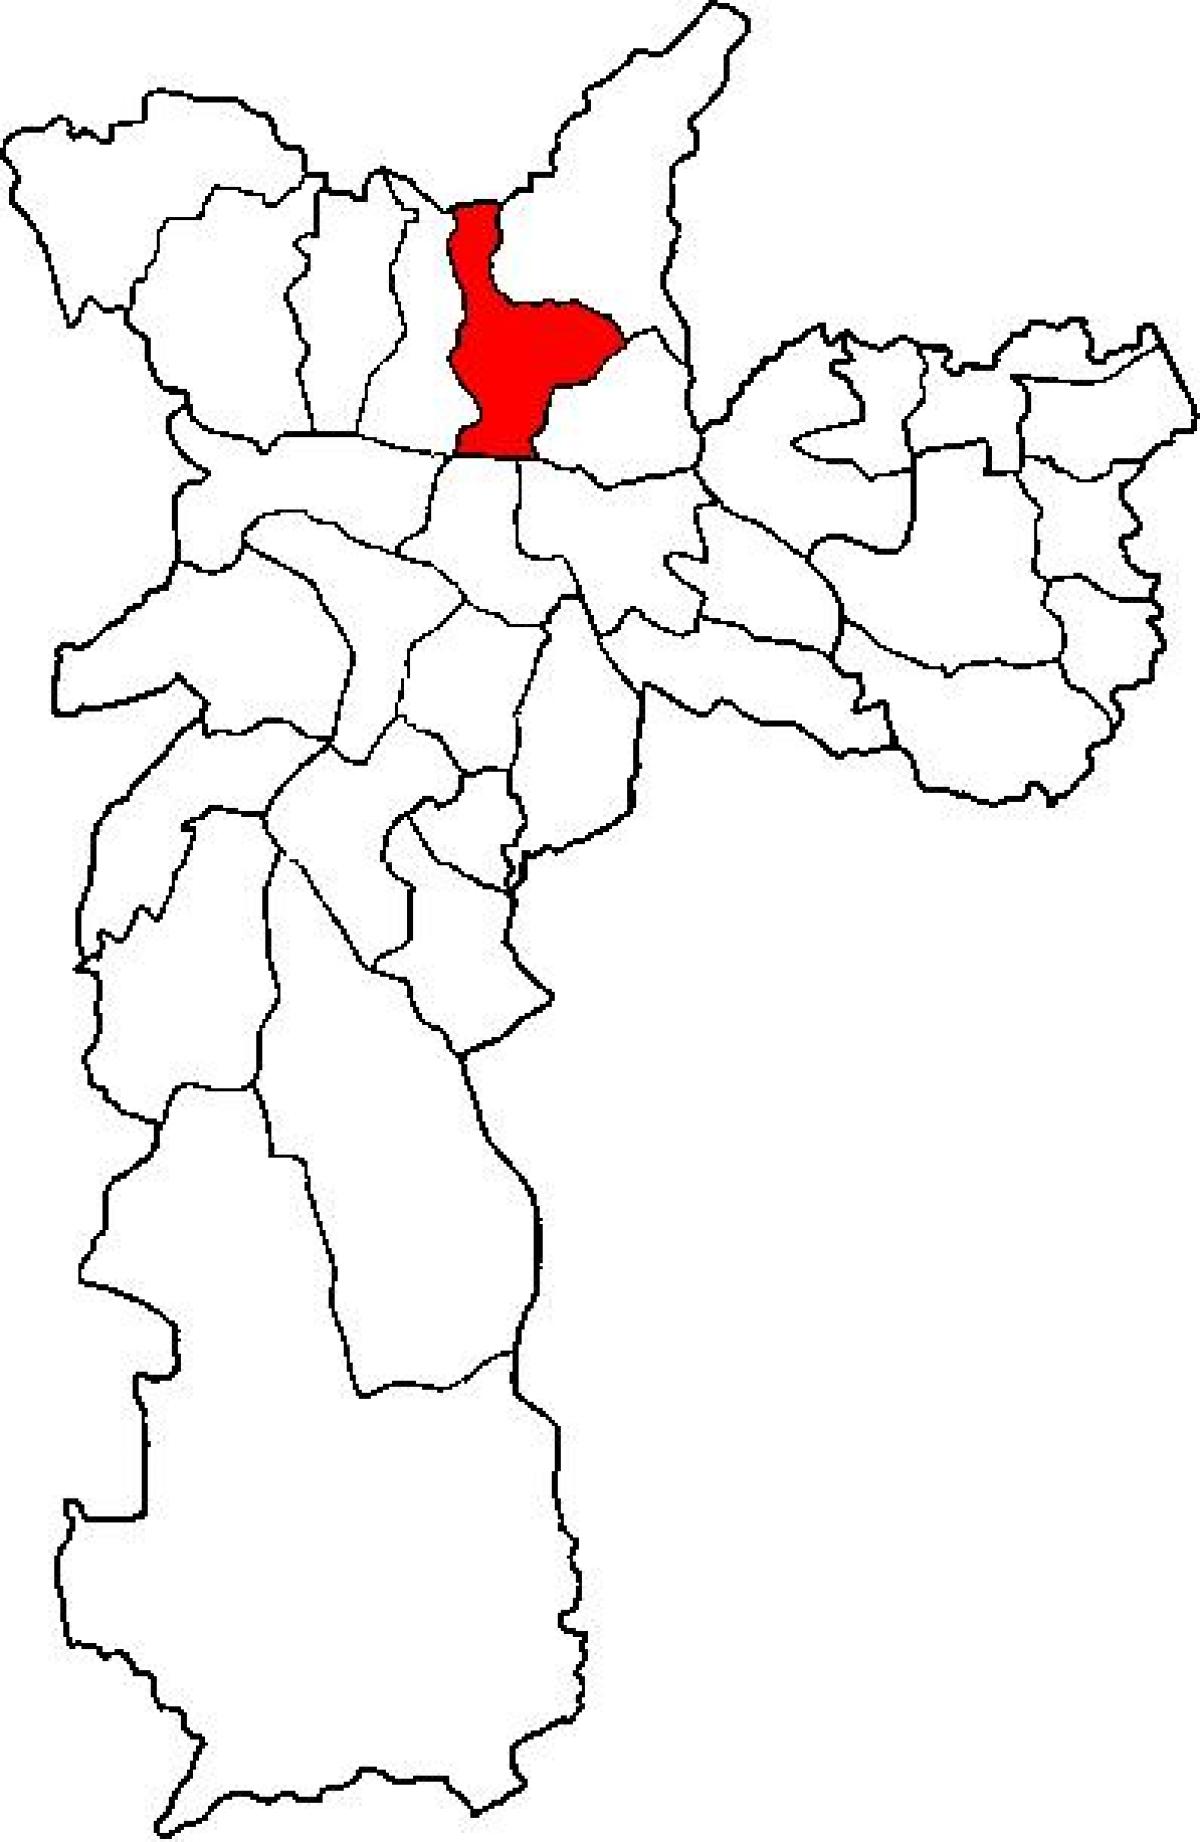 نقشہ کے سانتانا ذیلی صوبے ساؤ پالو